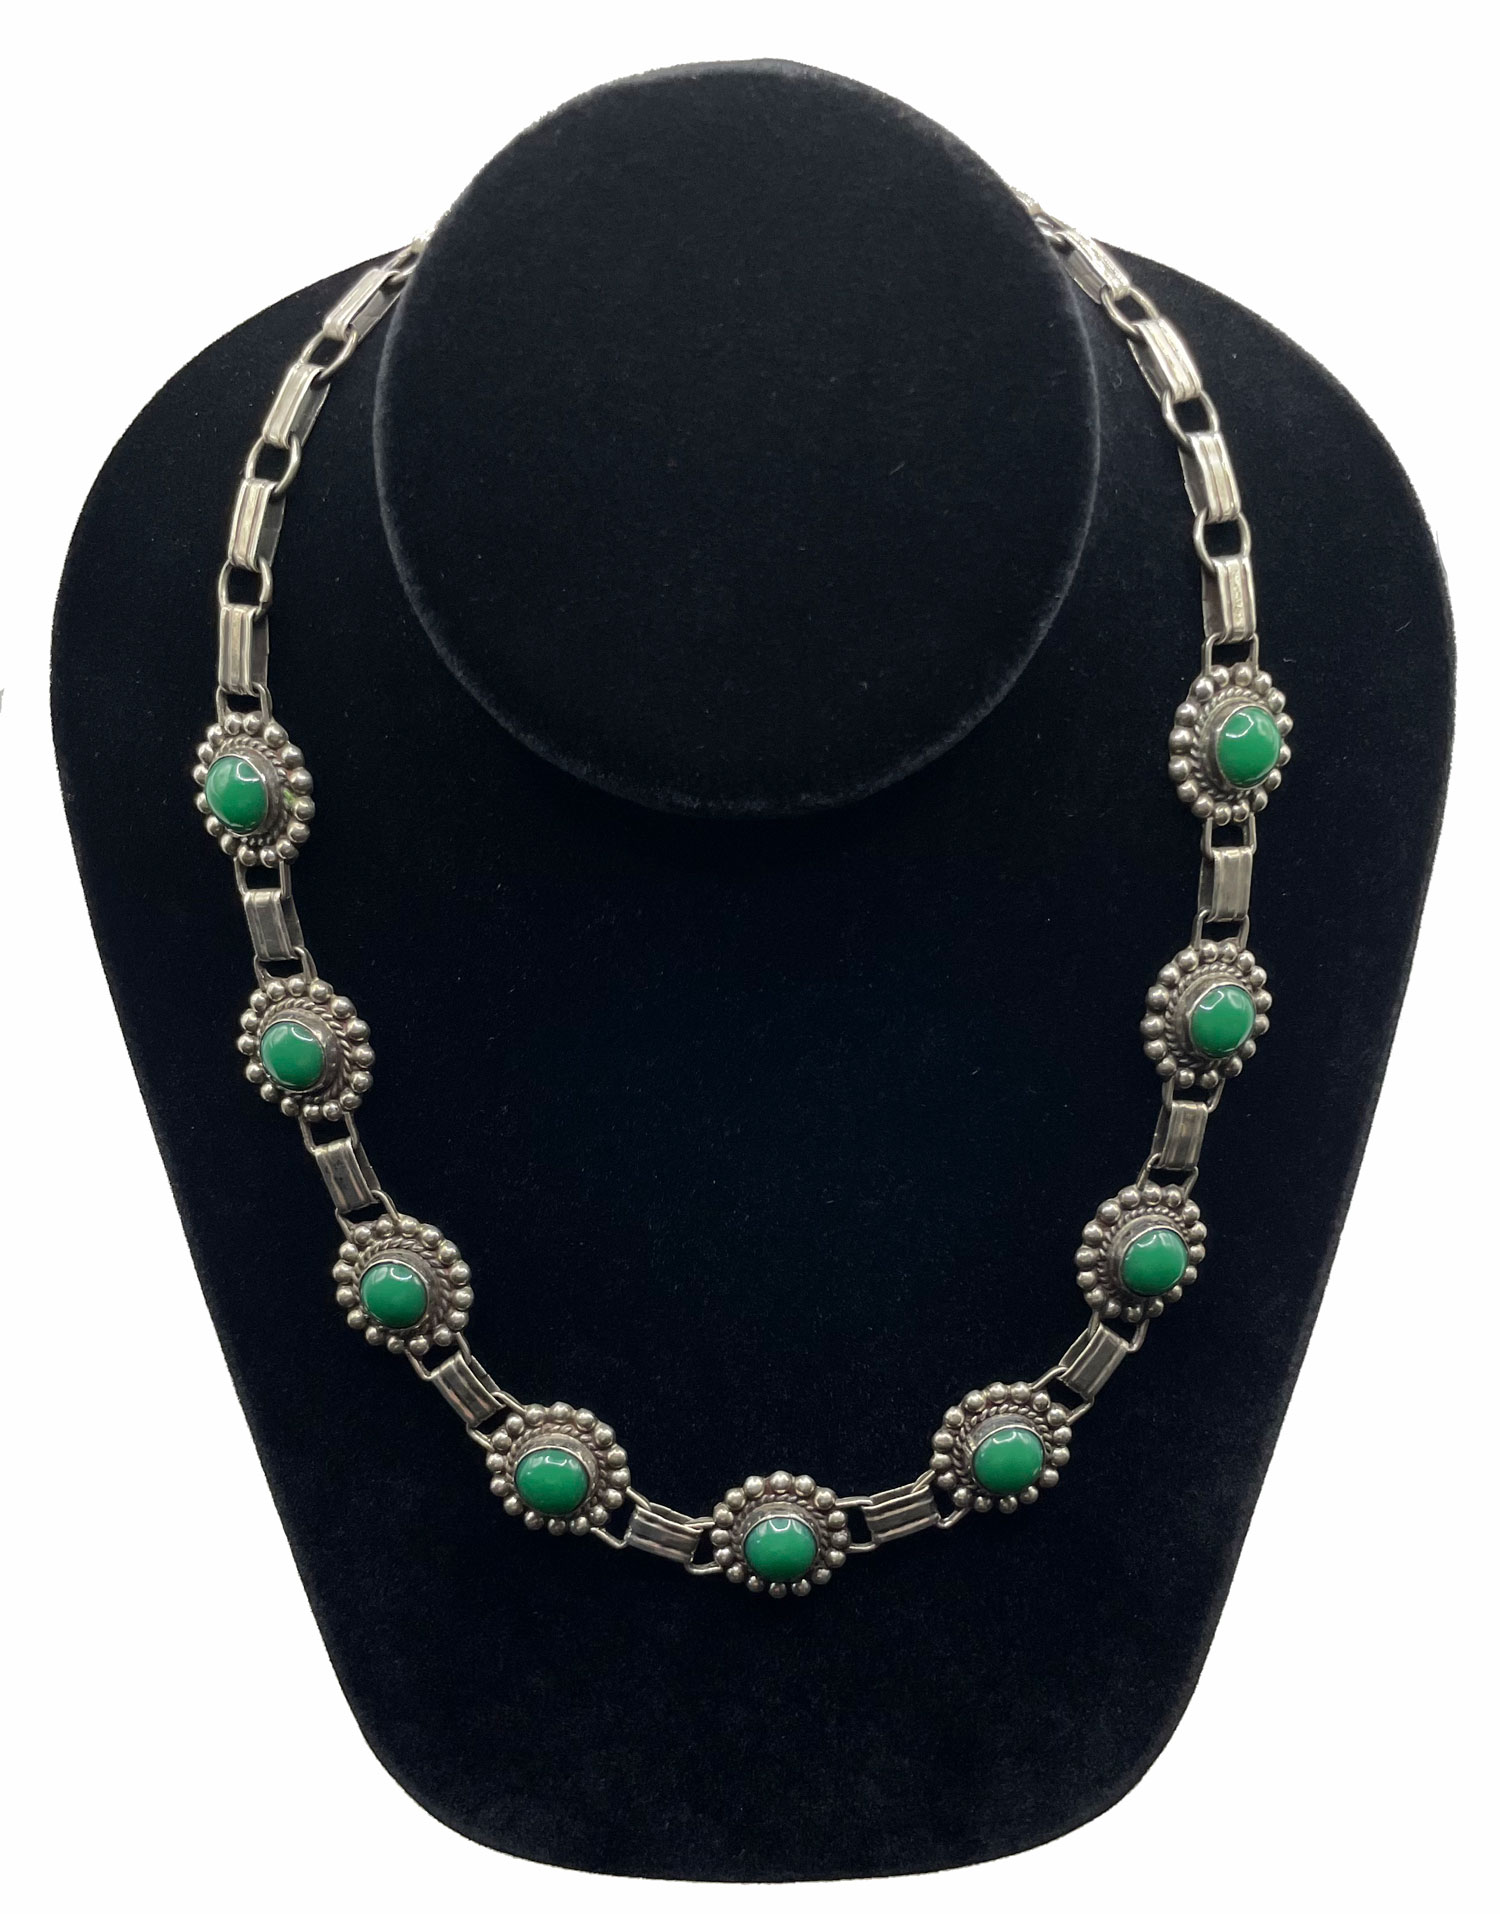 Mexican silver chrysoprase necklace